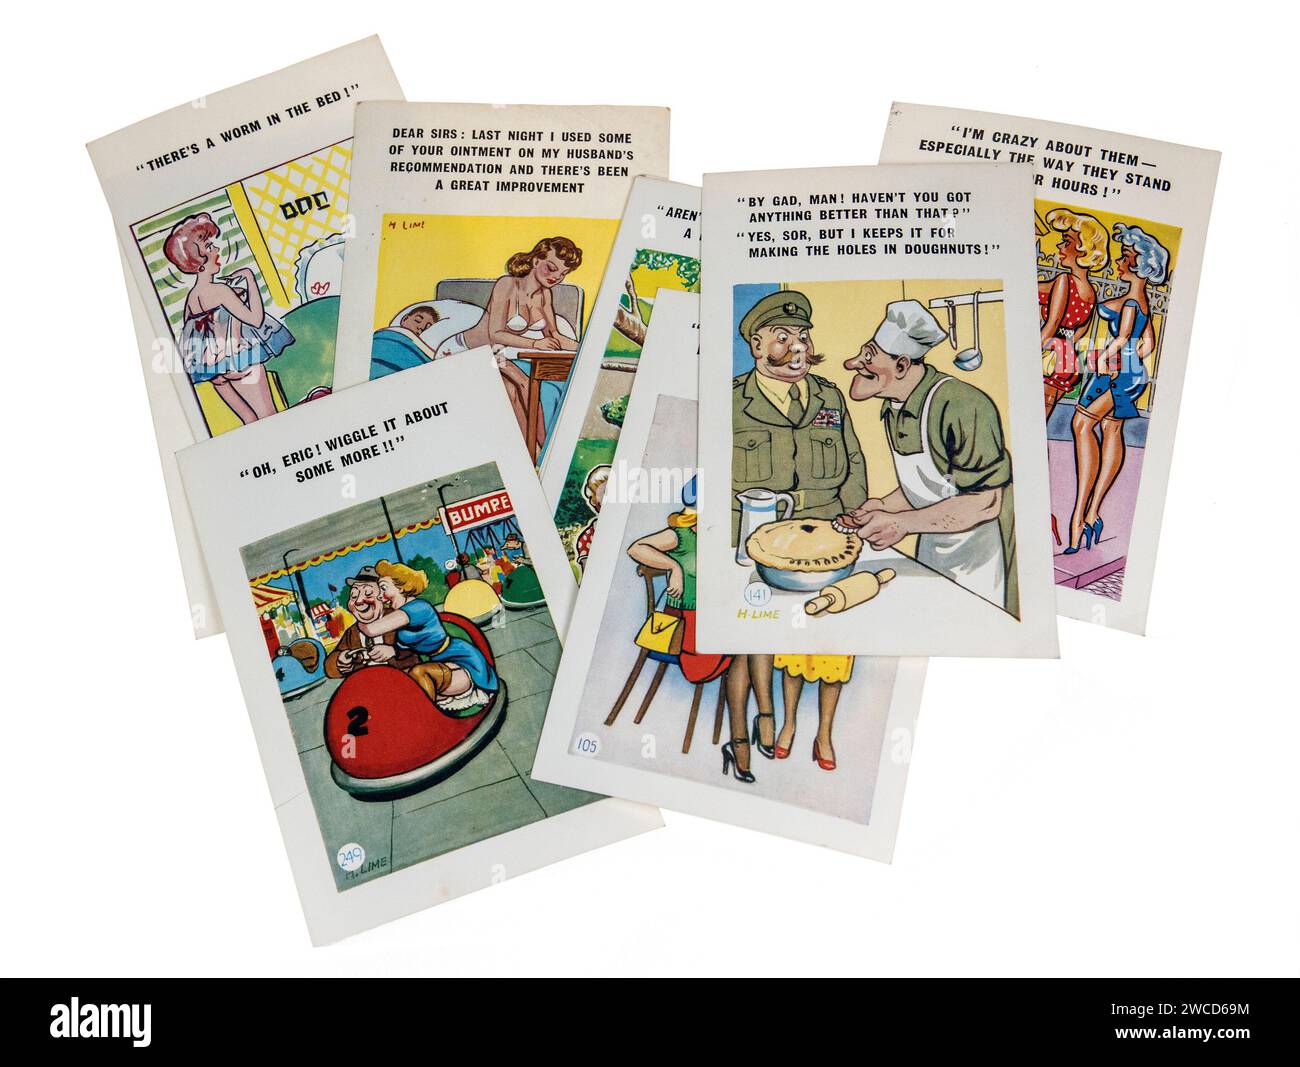 Cartes postales de bord de mer de bande dessinée des années 1960, Royaume-Uni Banque D'Images